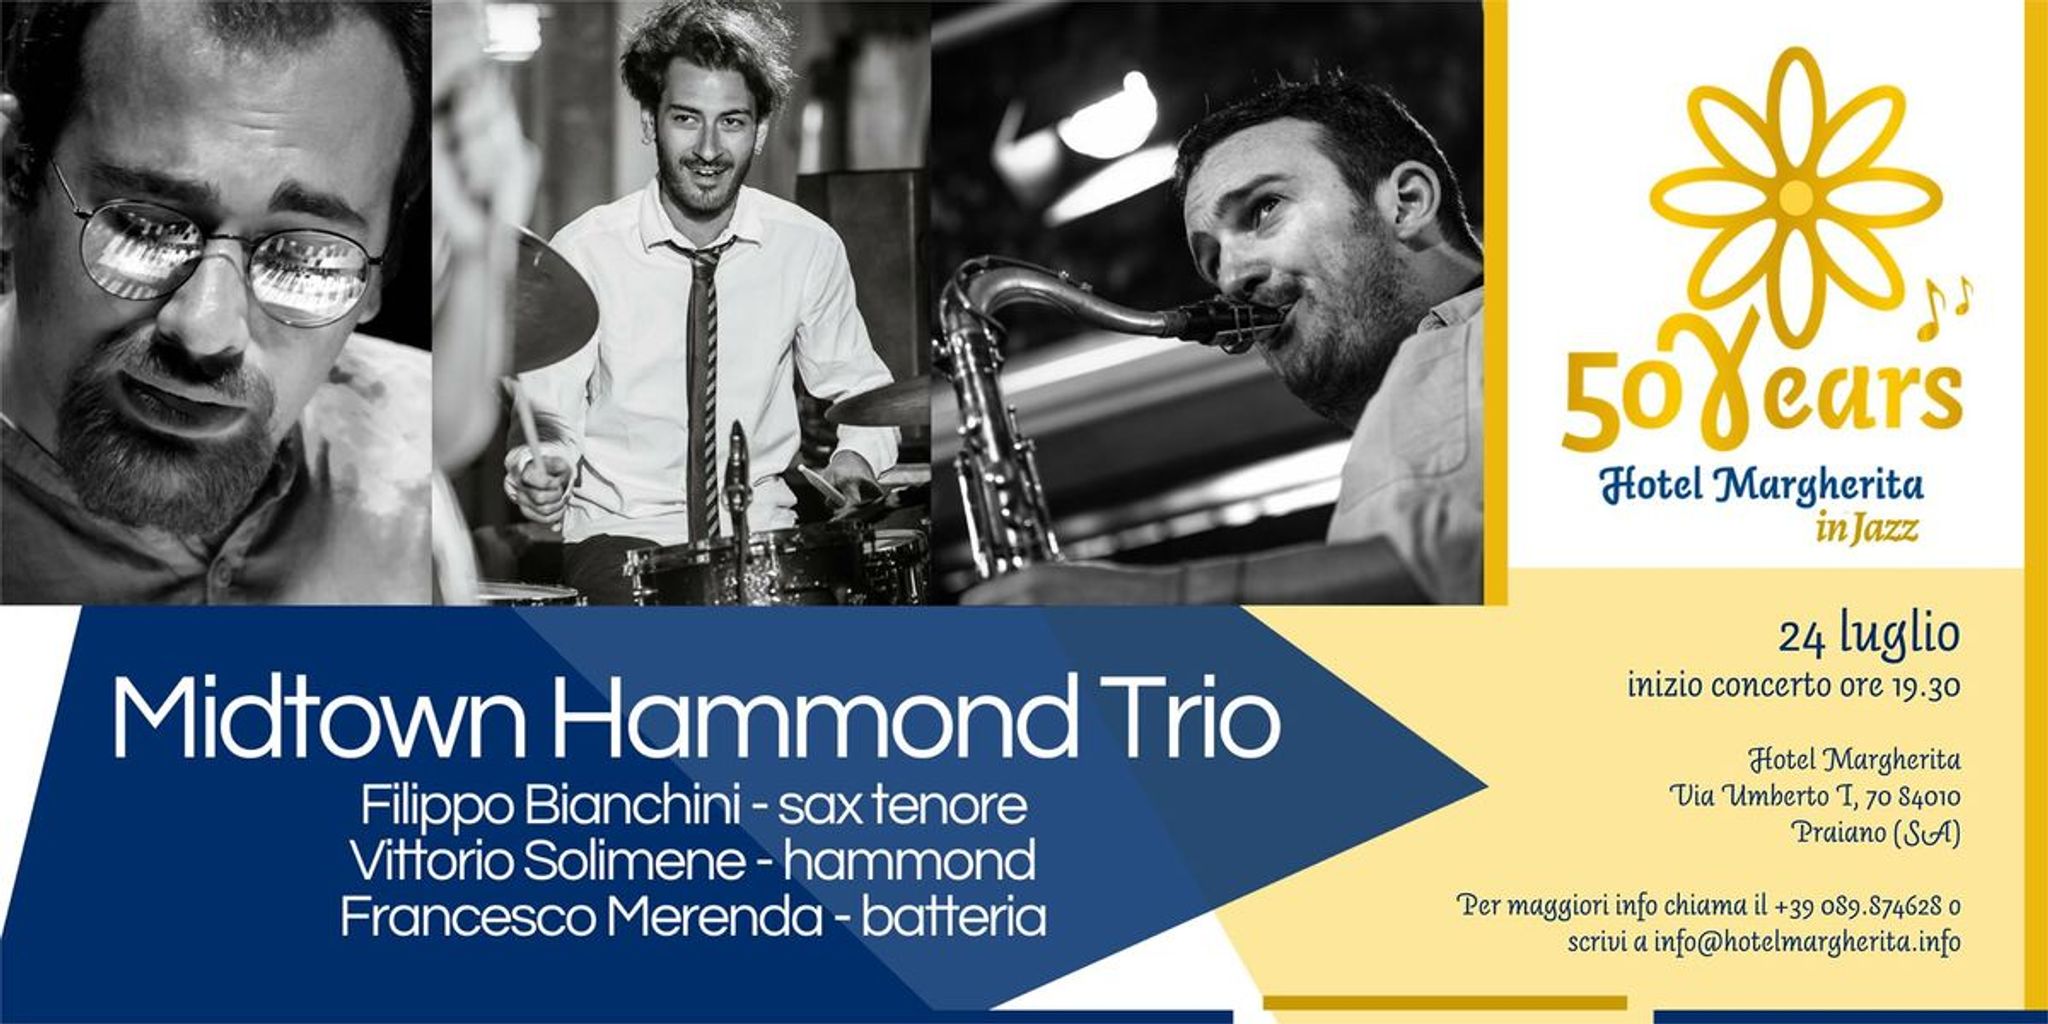  Hotel Margherita in Jazz: Midtown Hammond Trio